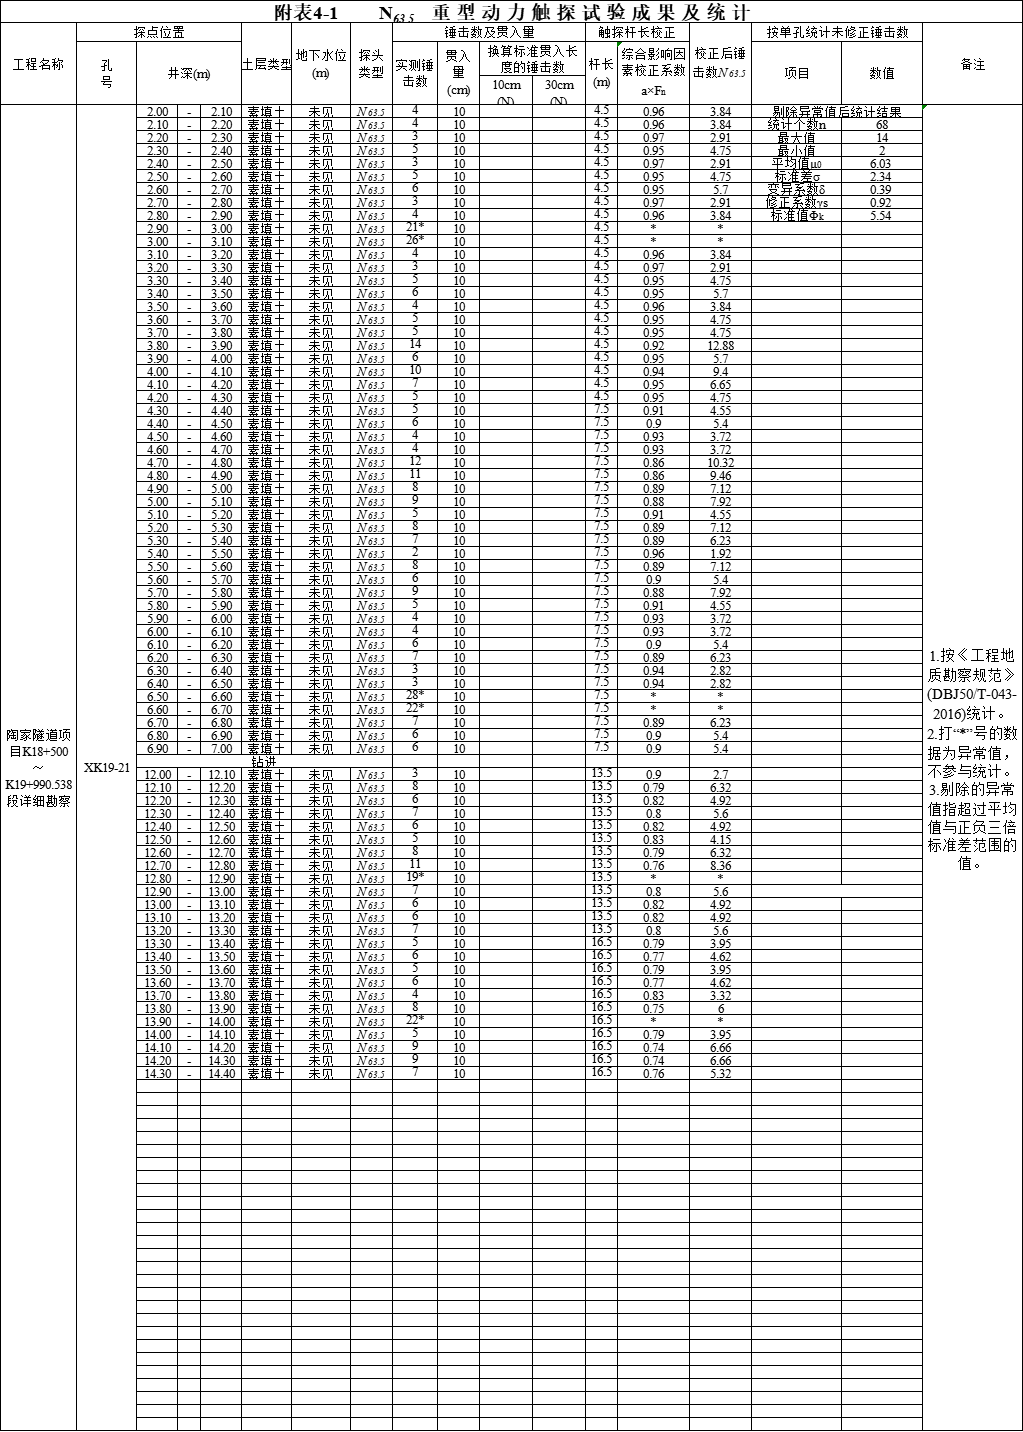 [重庆]隧道工程地质详细勘察报告(图表丰富)-动力触探统计表